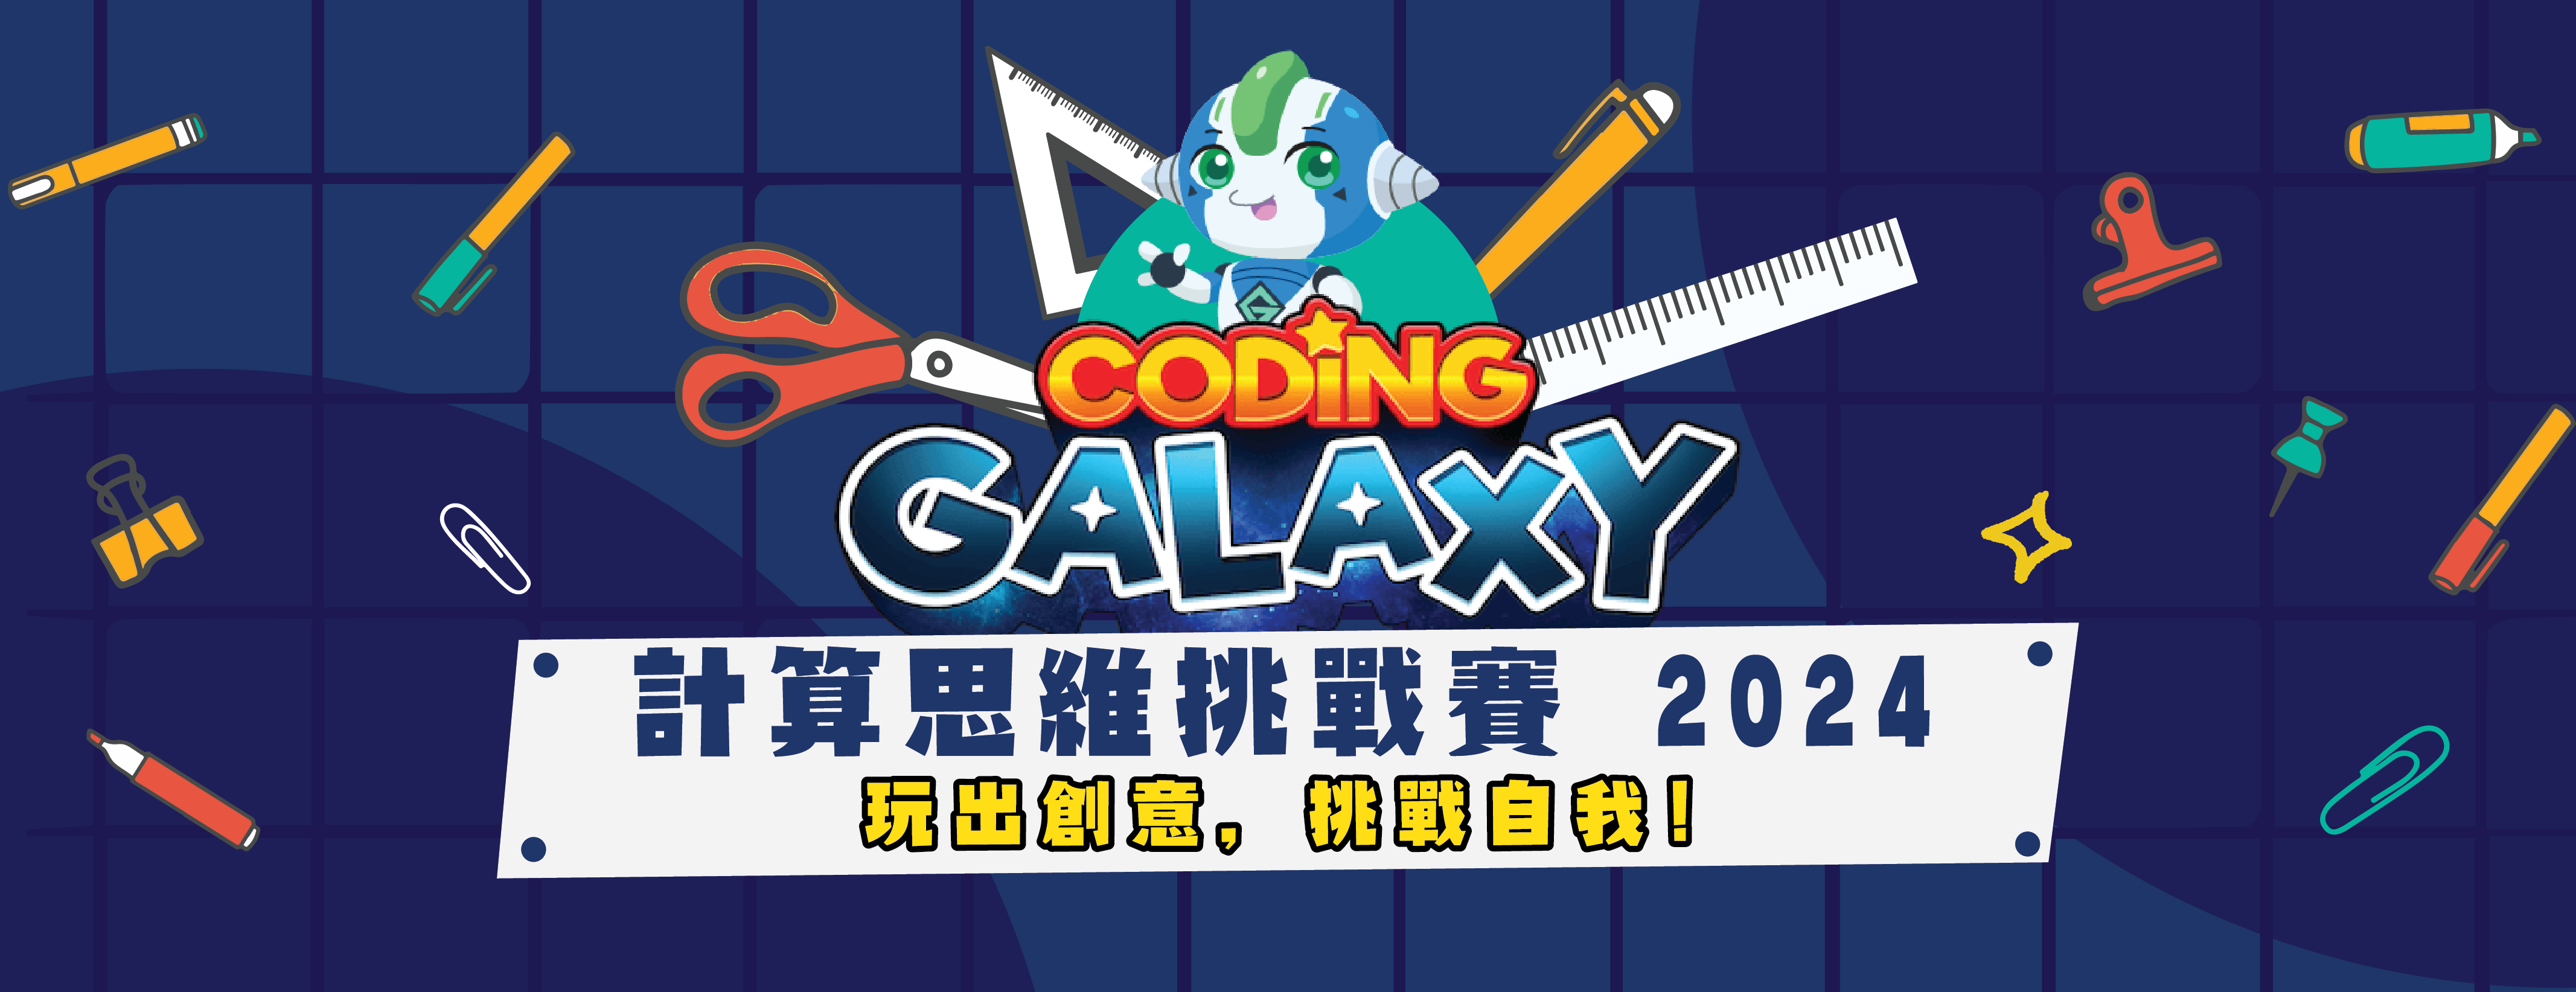 Coding Galaxy 計算思維挑戰賽20234